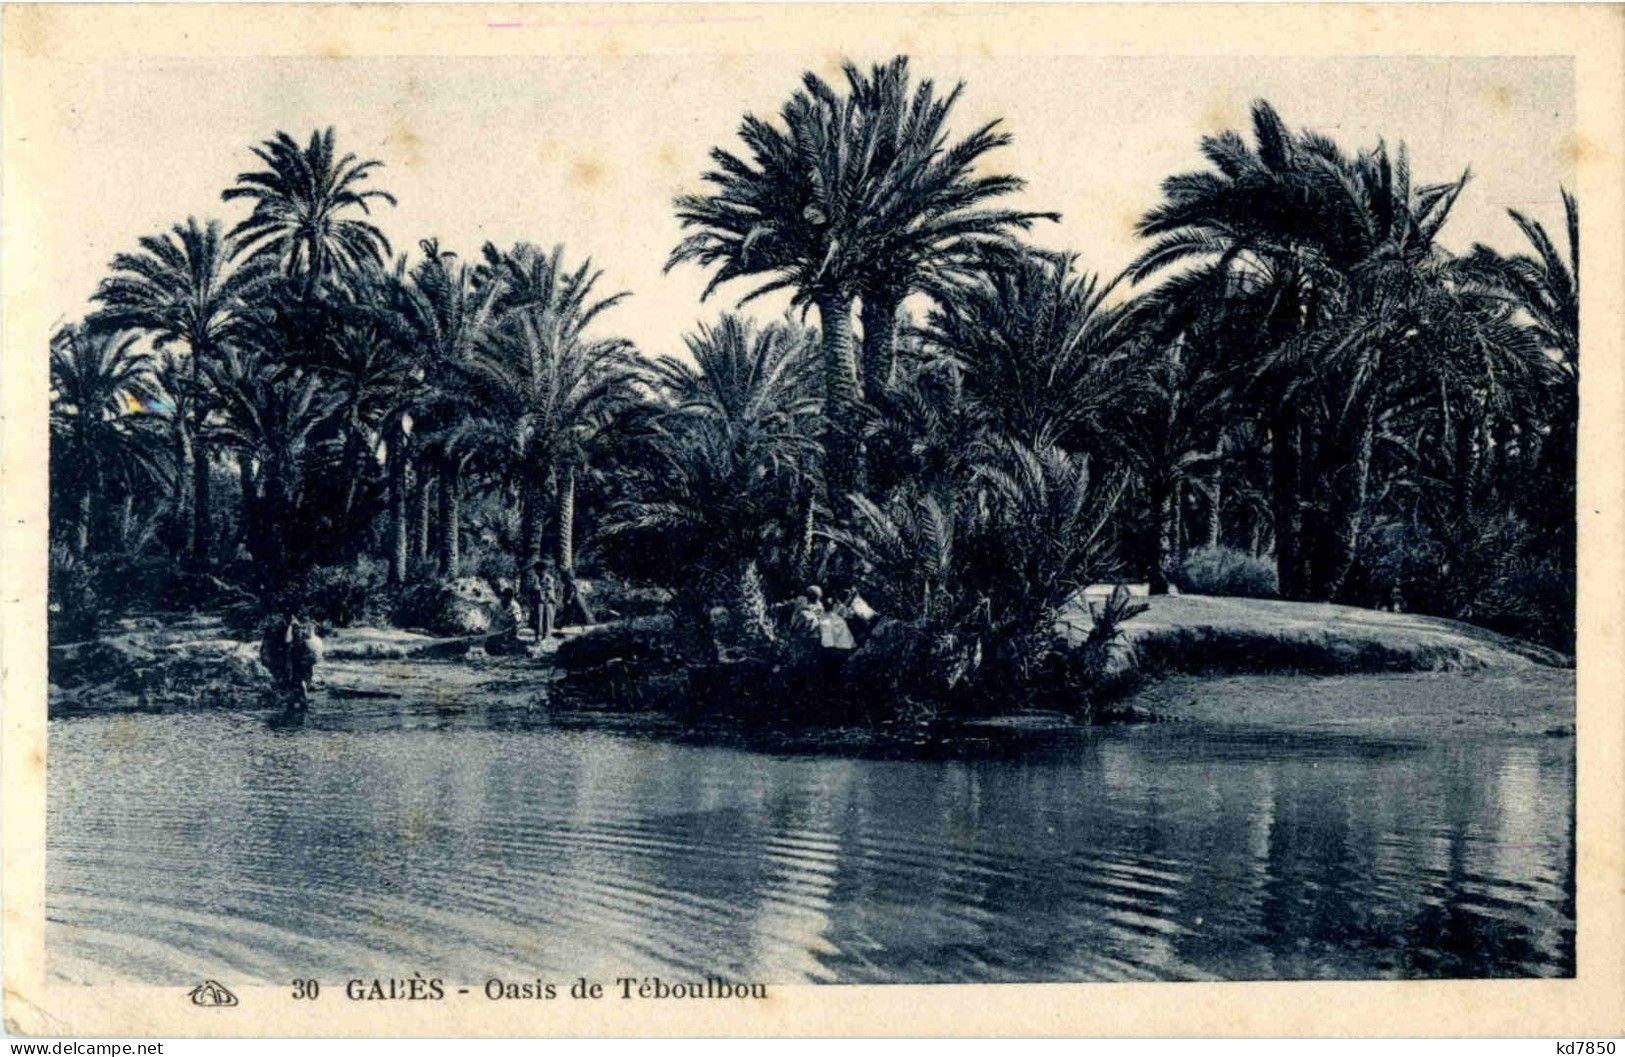 Gabes - Tunisia